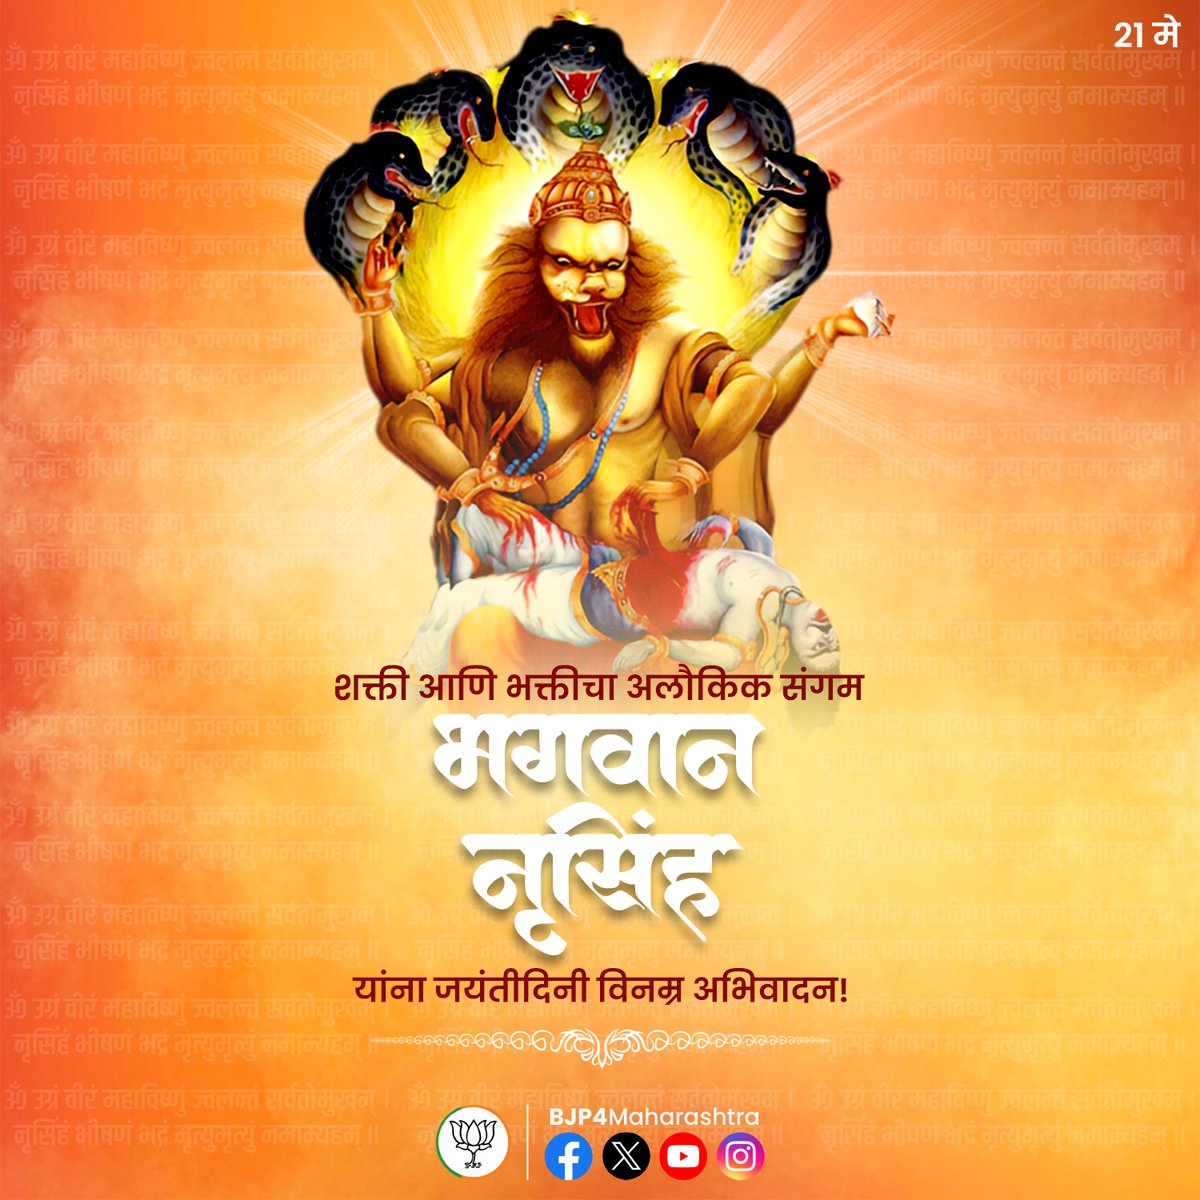 शक्तीचे देवता भगवान श्री नृसिंह यांना जयंतीदिनी कोटी कोटी नमन! #NarsimhaJayanti #JaiSriNarasimha #maharashtra